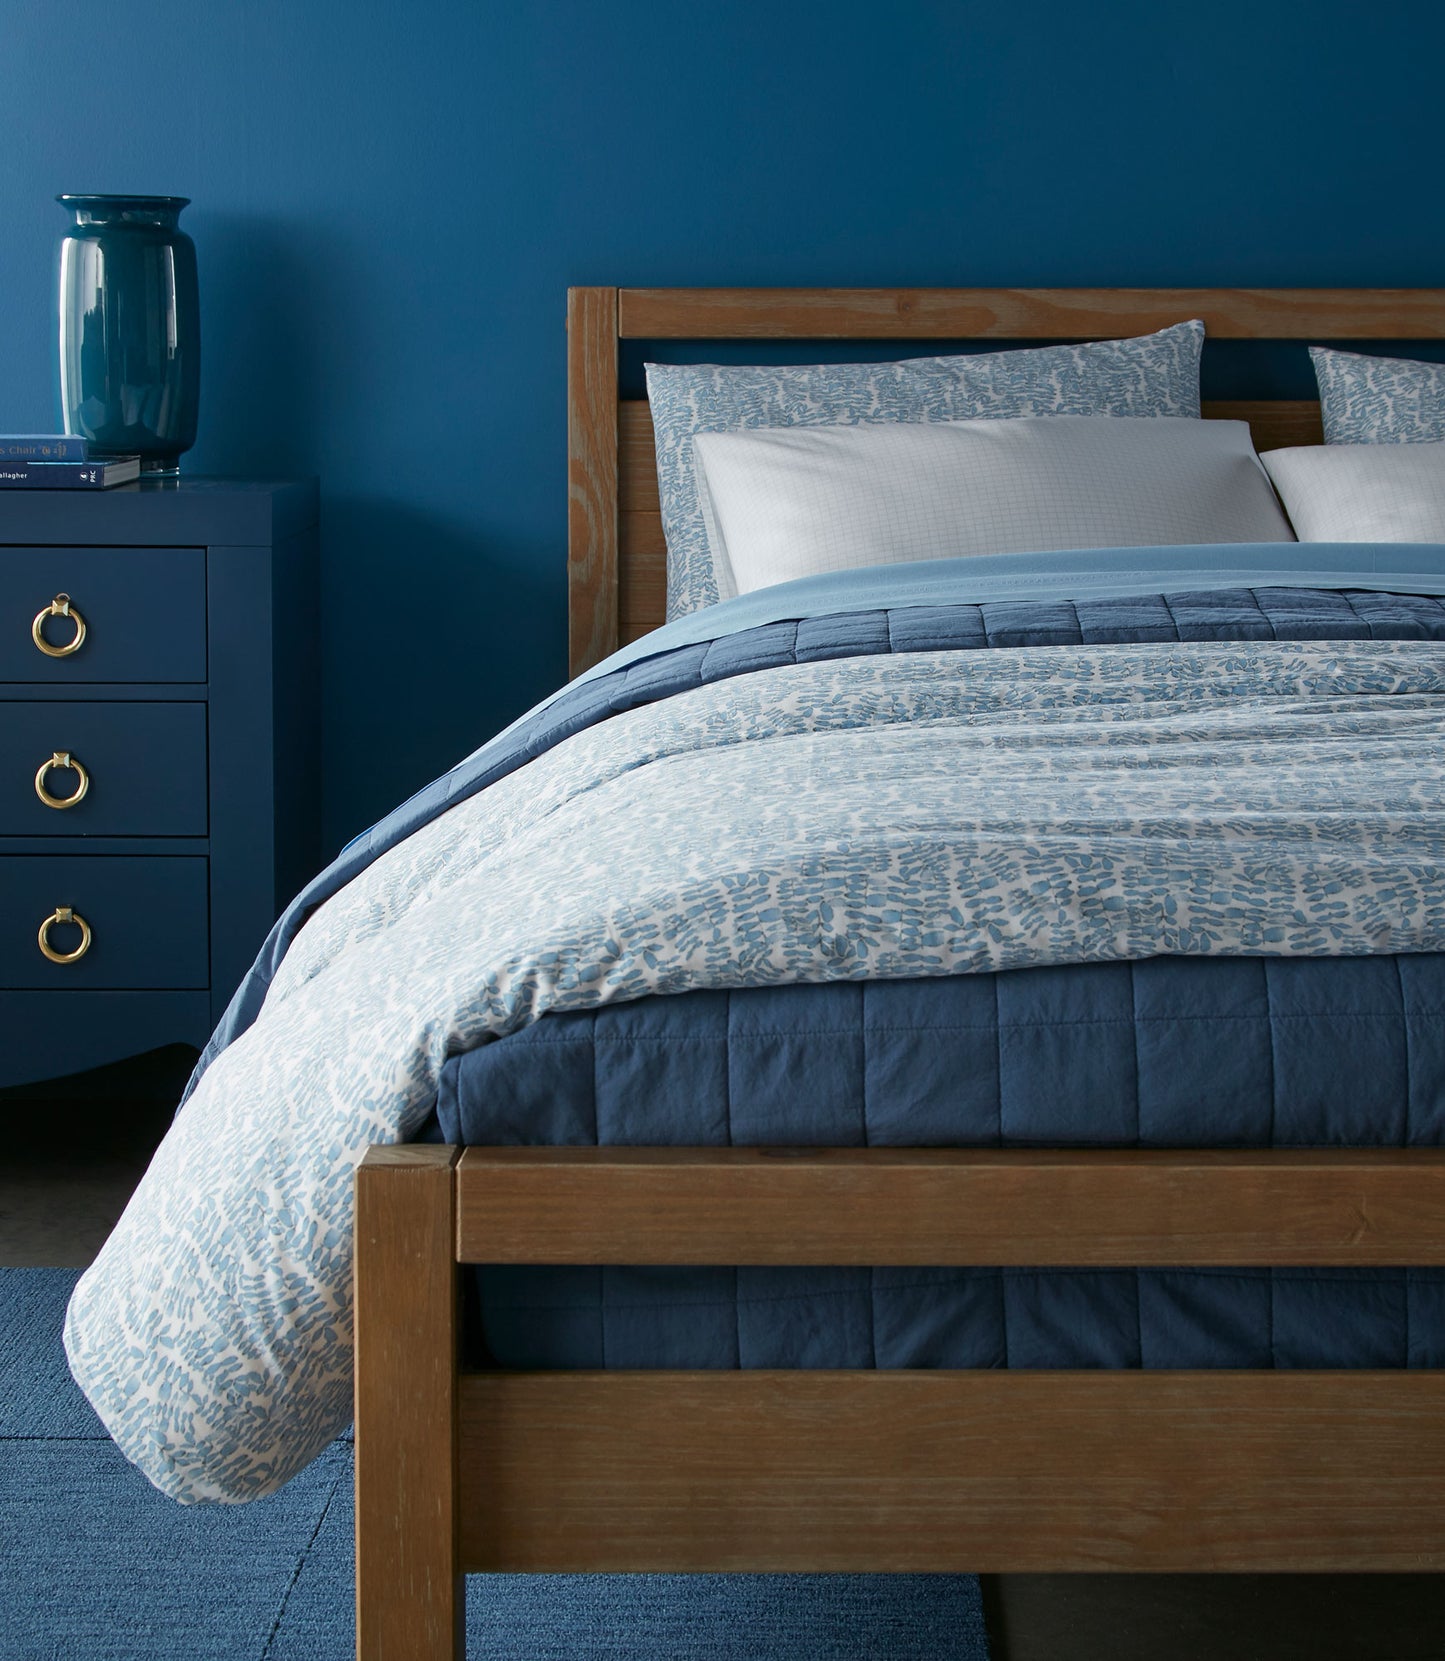 Fern Duvet Cover in Denim on Bed in Blue Room